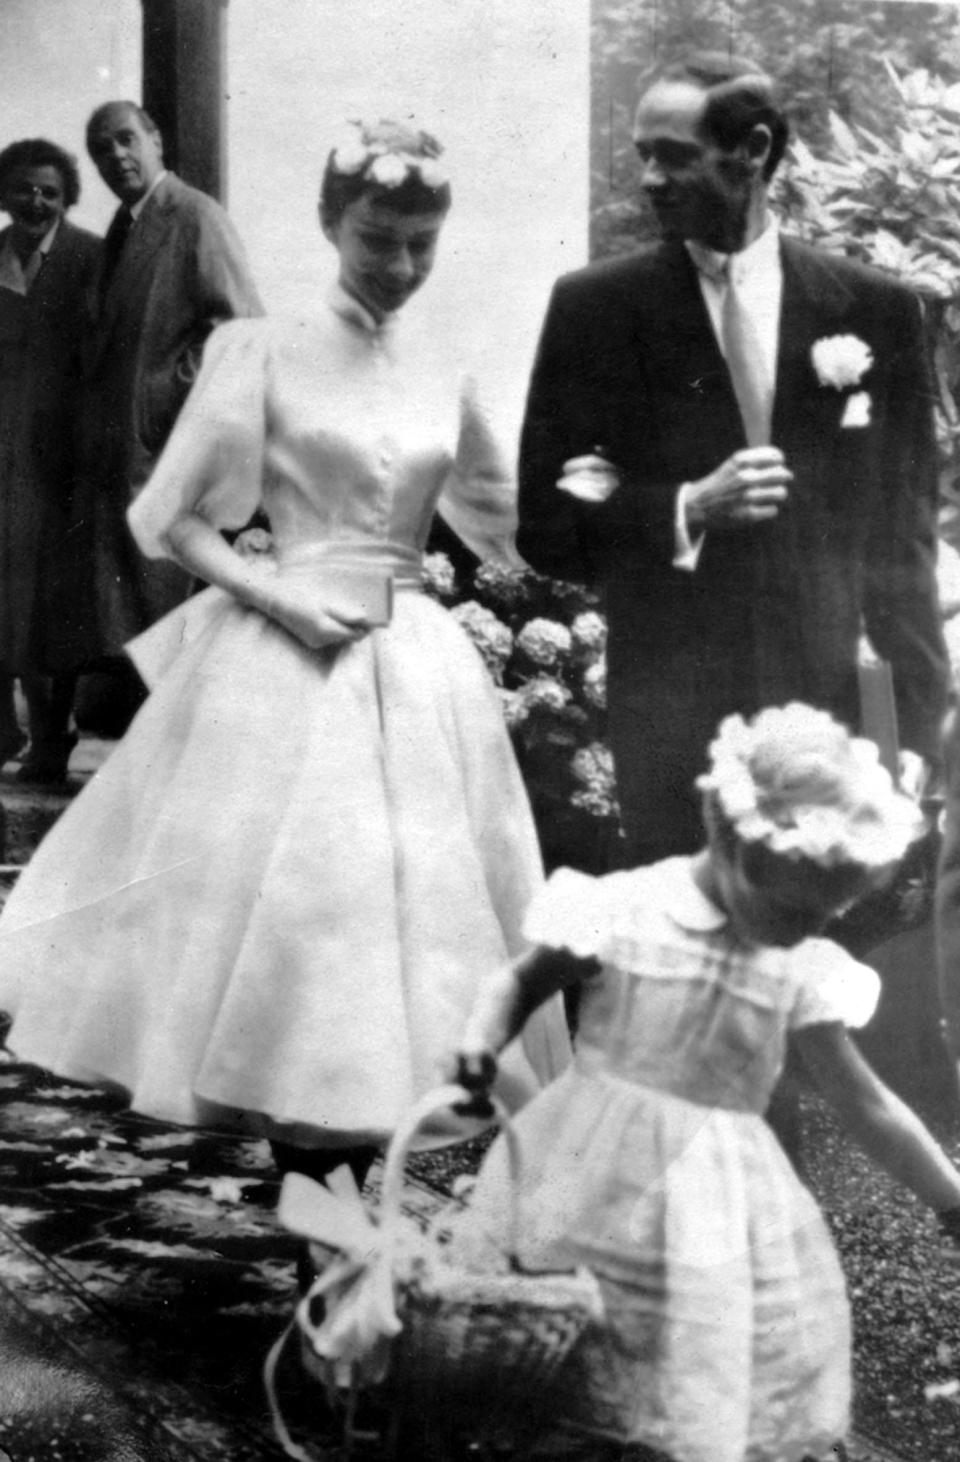 At her wedding to Mel Ferrer in Switzerland in 1954